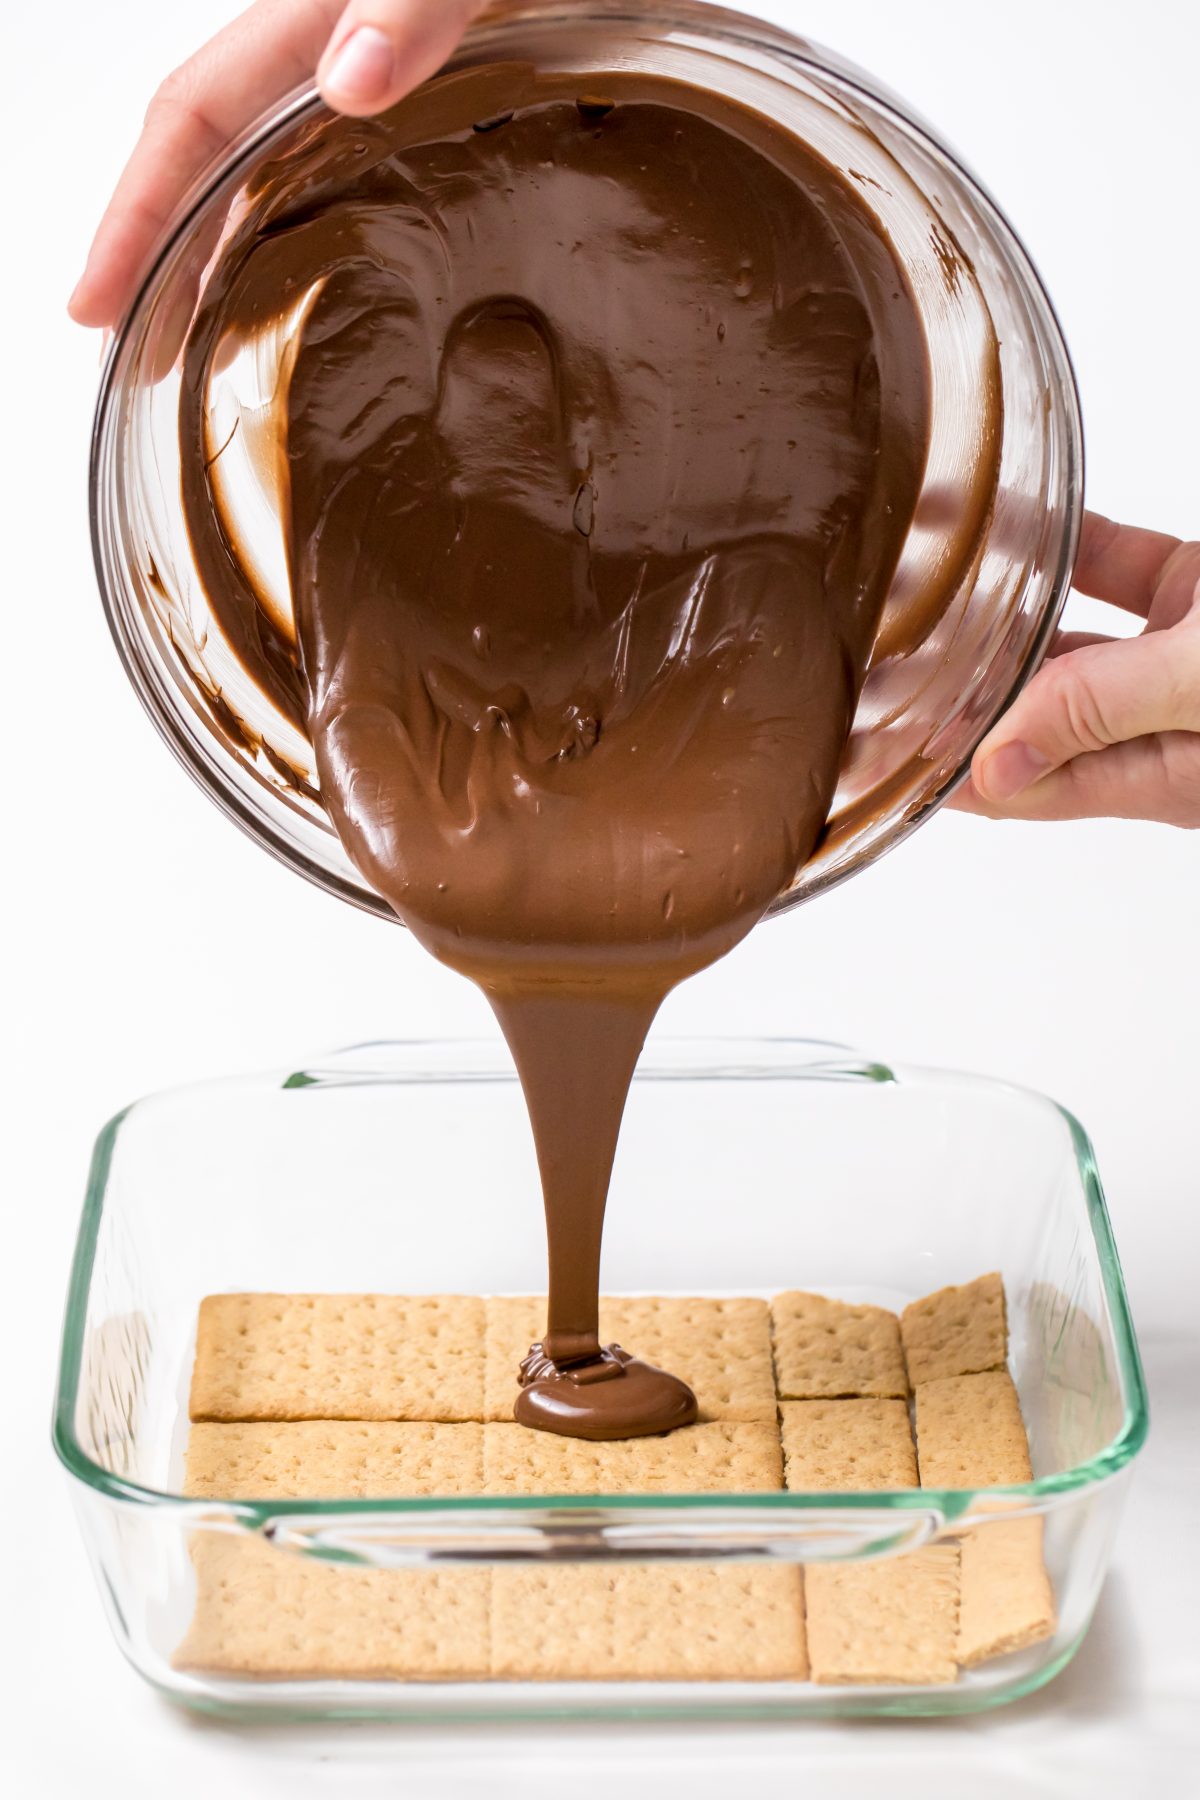 Make the milk chocolate layer